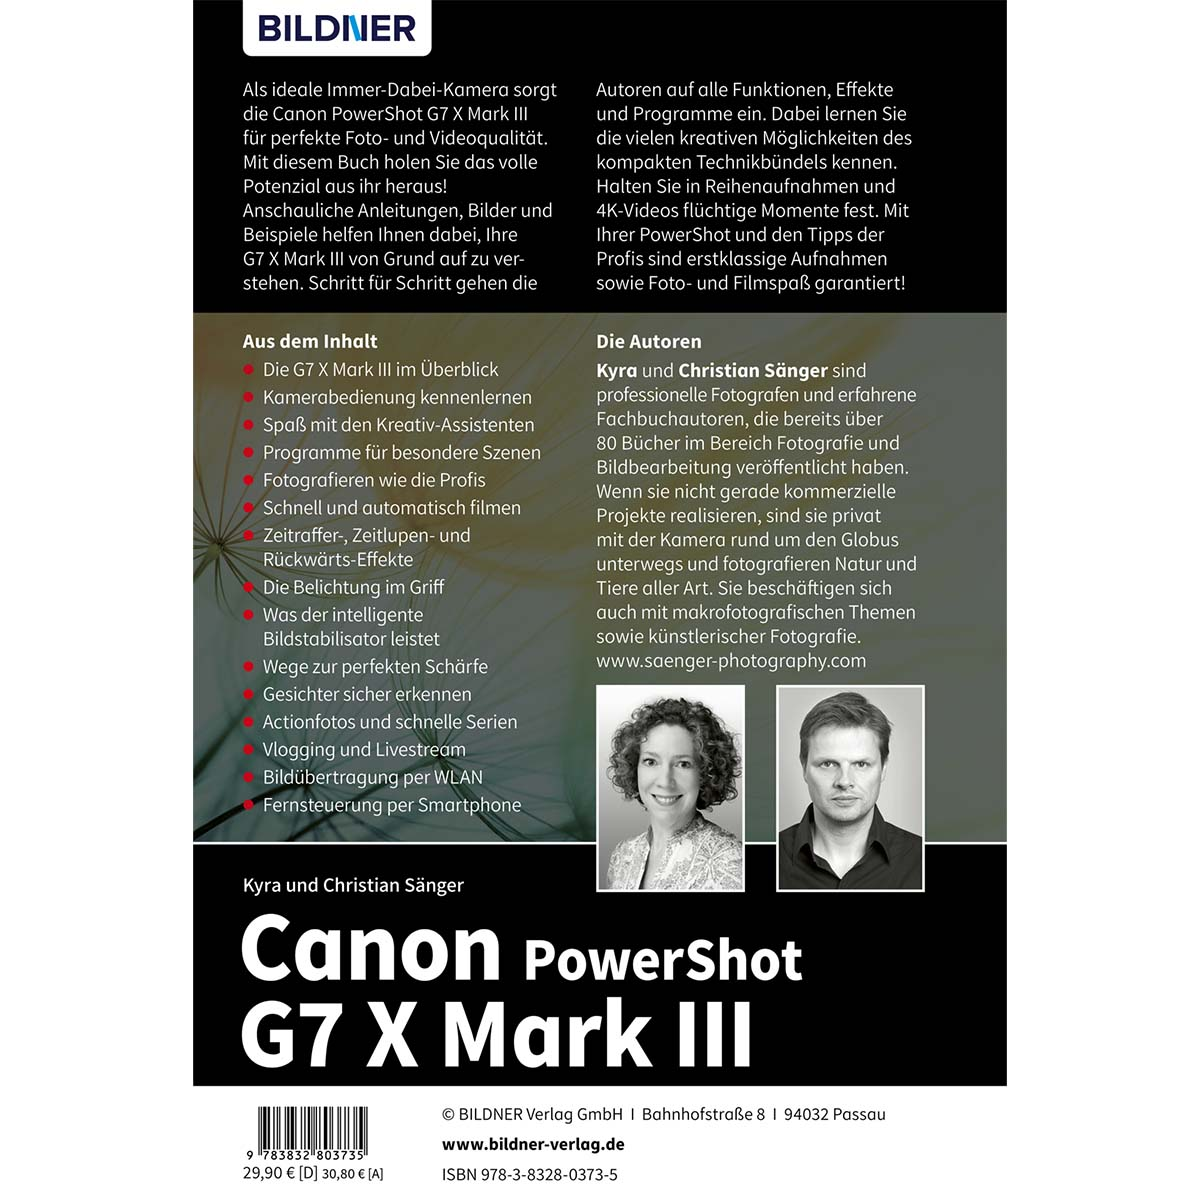 G7X Canon III PowerShot Kamera! zu umfangreiche Ihrer Das Praxisbuch Mark -